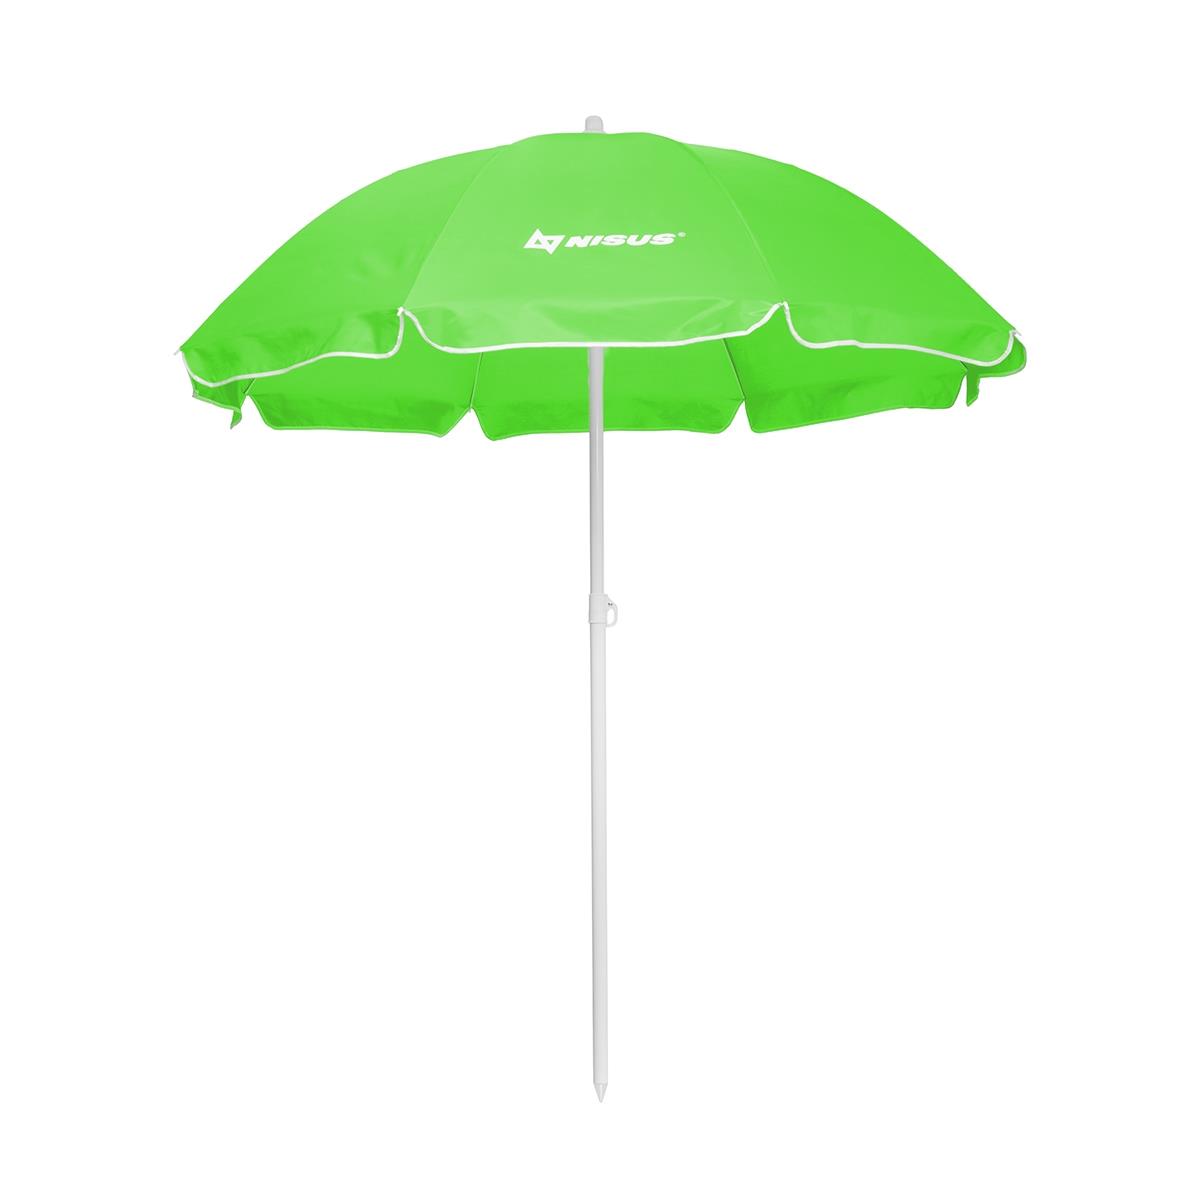 Зонт пляжный d 2,00м прямой зеленый (28/32/210D) NA-200-G Nisus зонт пляжный d 2 00м с наклоном салатовый 28 32 210d na 200n lg nisus